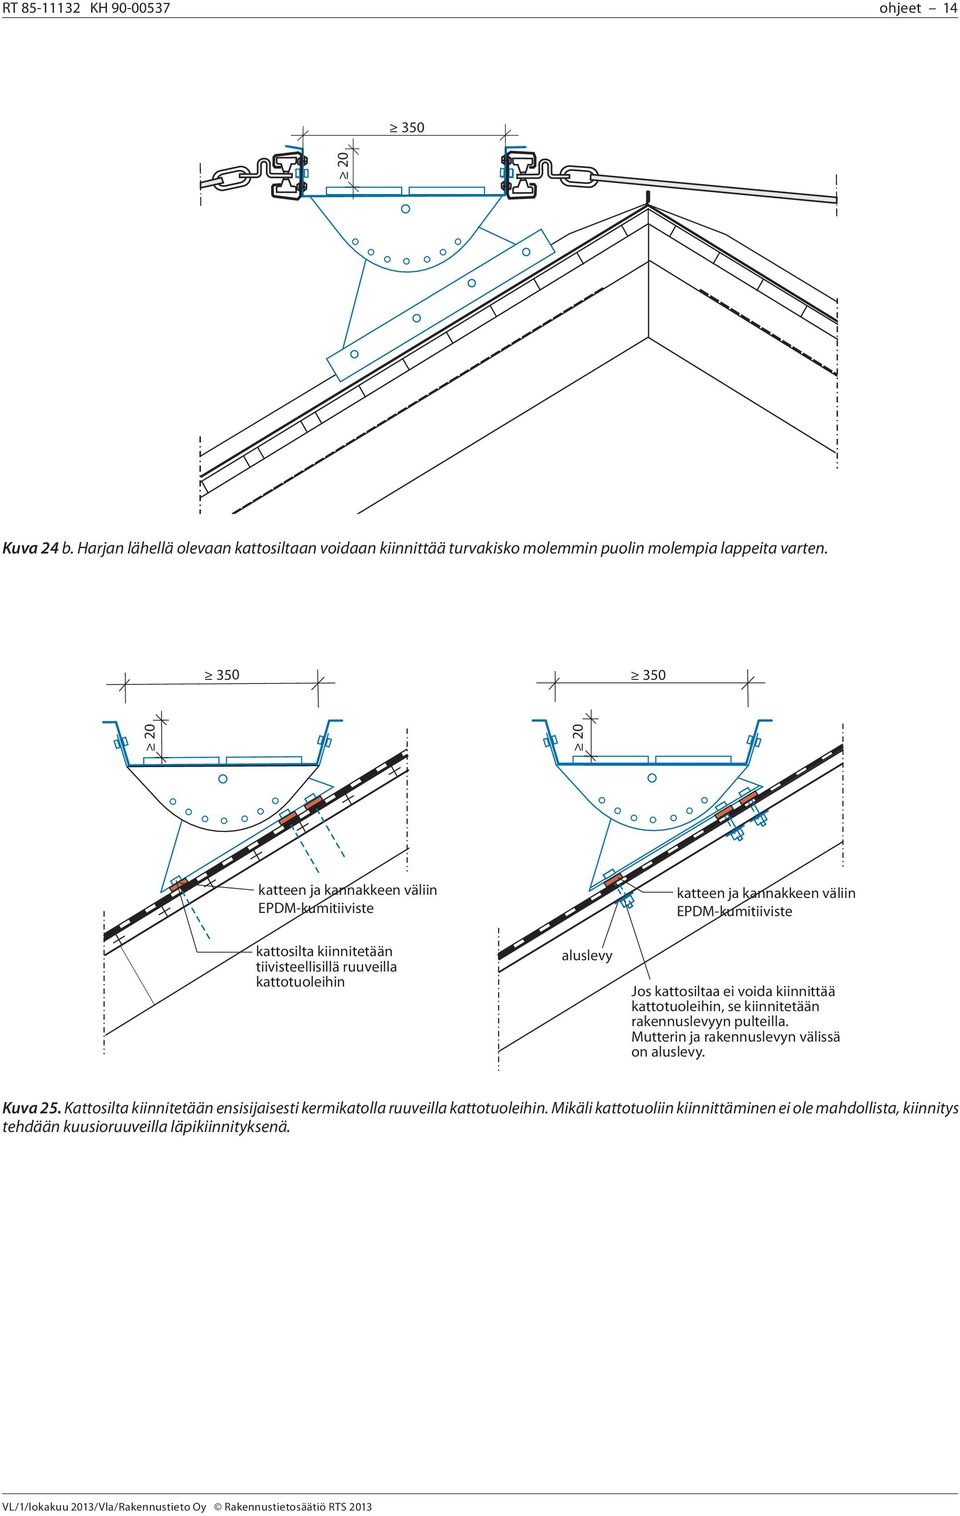 EPDM-kumitiiviste Jos kattosiltaa ei voida kiinnittää kattotuoleihin, se kiinnitetään rakennuslevyyn pulteilla. Mutterin ja rakennuslevyn välissä on aluslevy. Kuva 25.